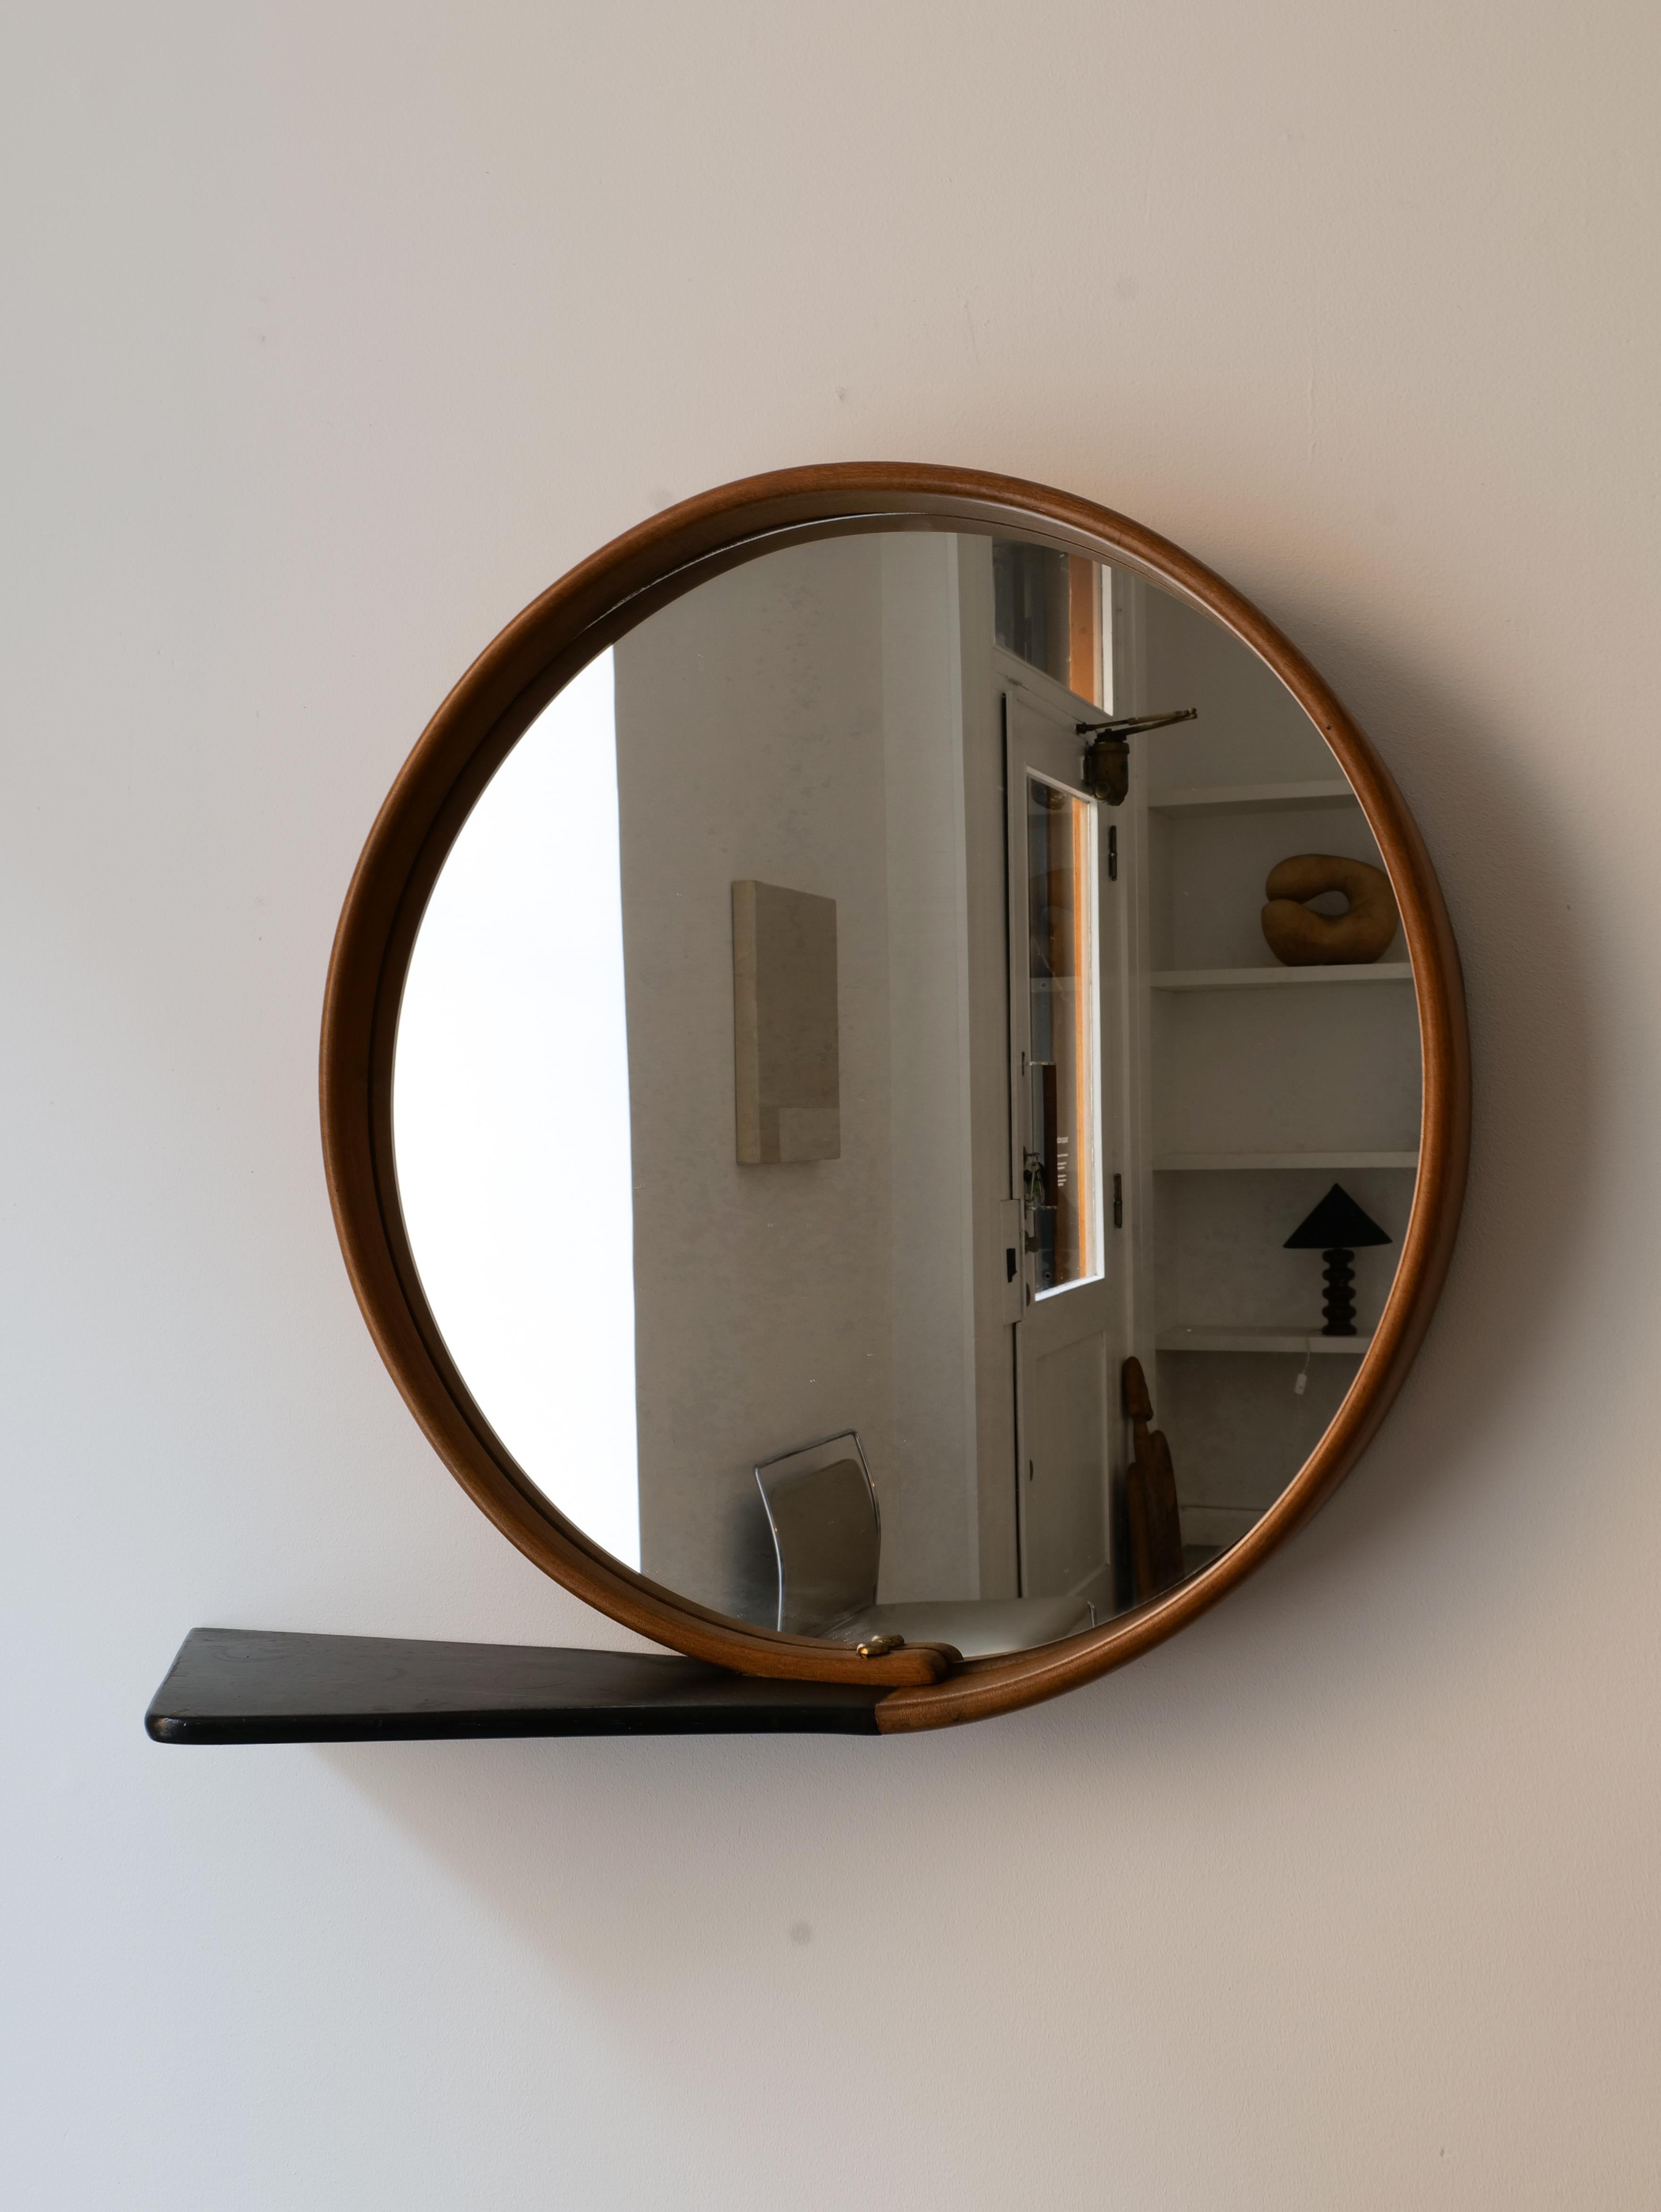 Ein wunderschön gearbeiteter, kreisförmiger Spiegel der schwedischen Moderne, der in einer Schlaufe aus Holz um den gesamten Spiegel herum geformt ist. Messingstifte halten die Schlaufe mit einem verlängerten Stück, das als kleine Ablagefläche